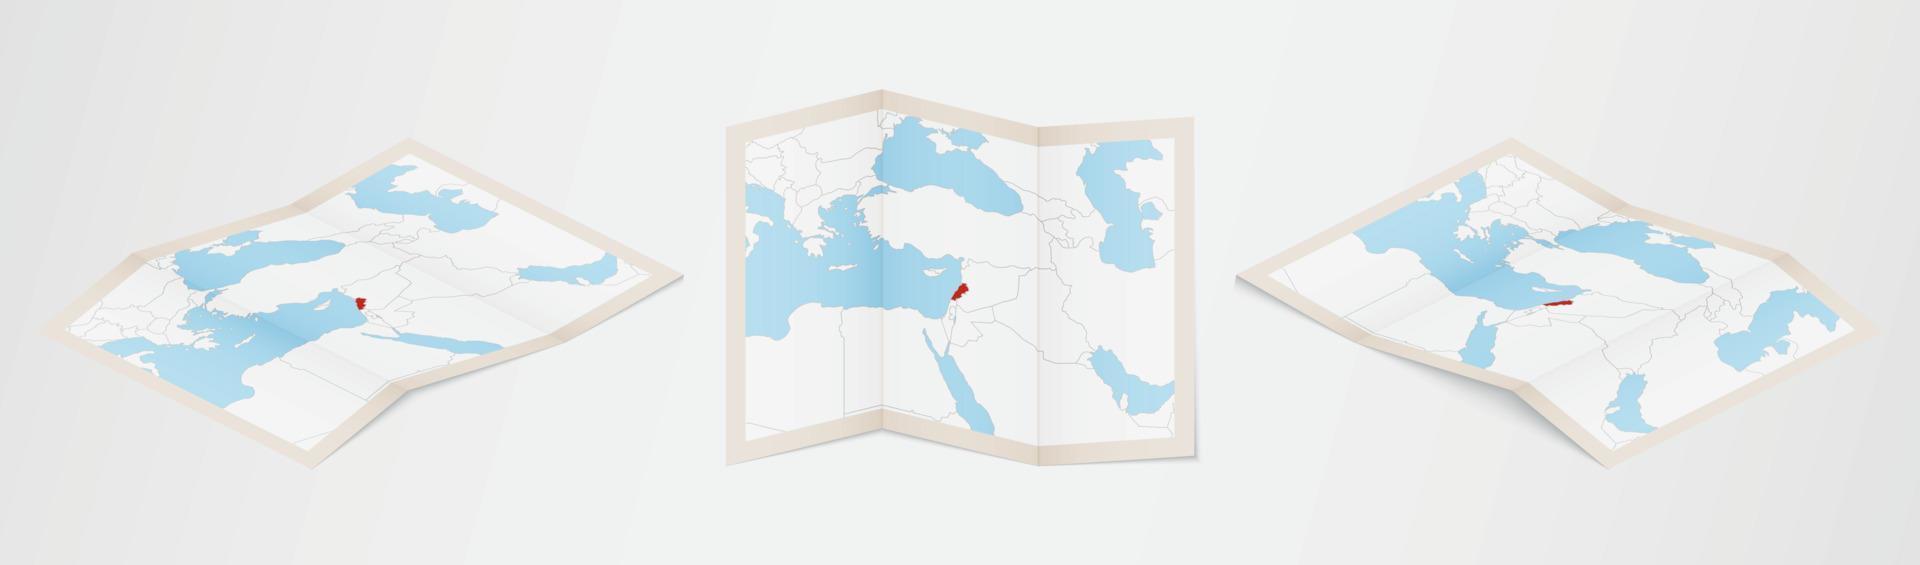 Faltkarte des Libanon in drei verschiedenen Versionen. vektor